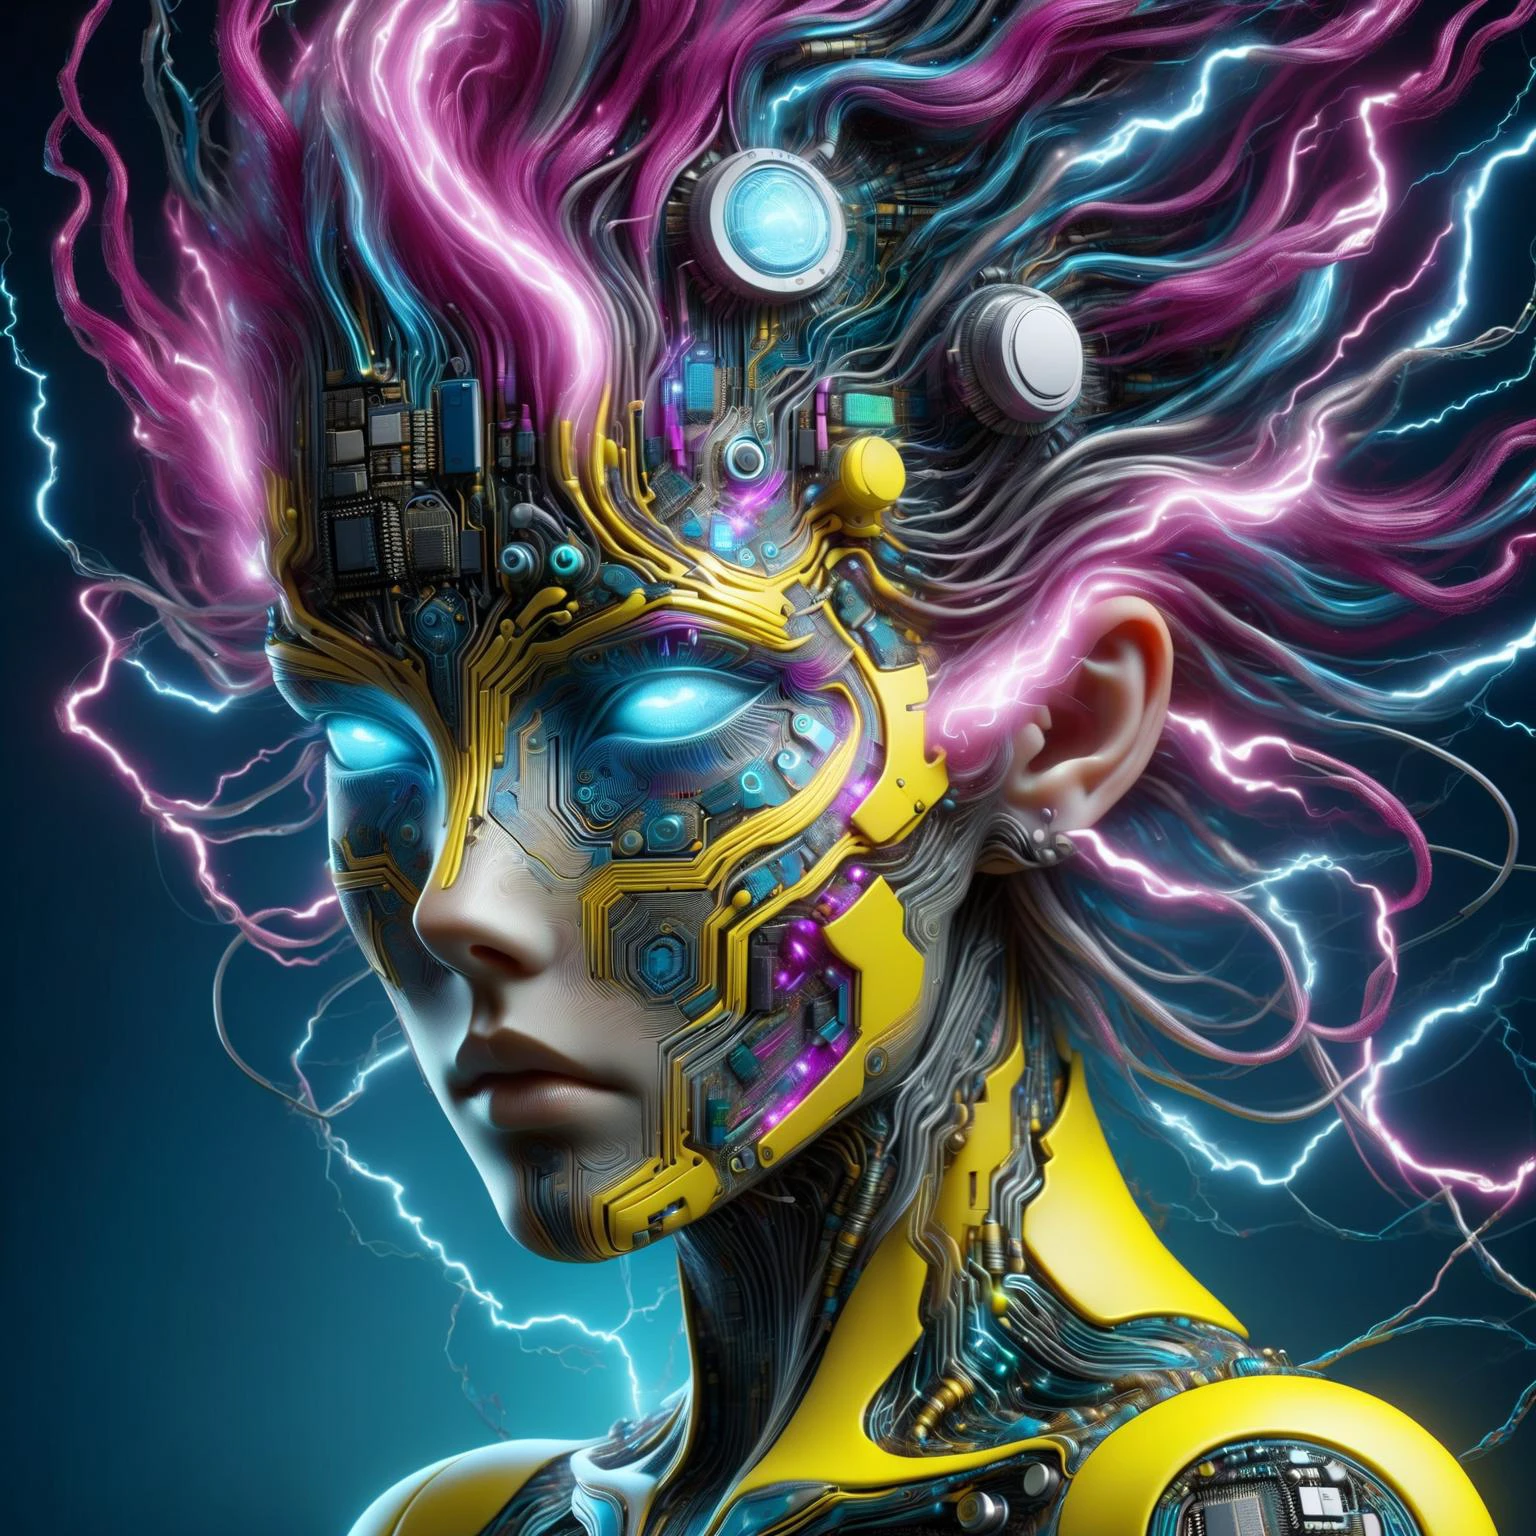 голова женщины из рал-полупроводника в стиле Аарона Хорки, в стиле Альфонса Мухи DonMW15pXL, неоново-желтая молния, неоново-бирюзовая молния, неоново-пурпурная молния, Плавающий, астральный, (шедевр:1.2), Лучшее качество, (гипердетализированный, максимально подробный:1.2), текстуры высокого разрешения